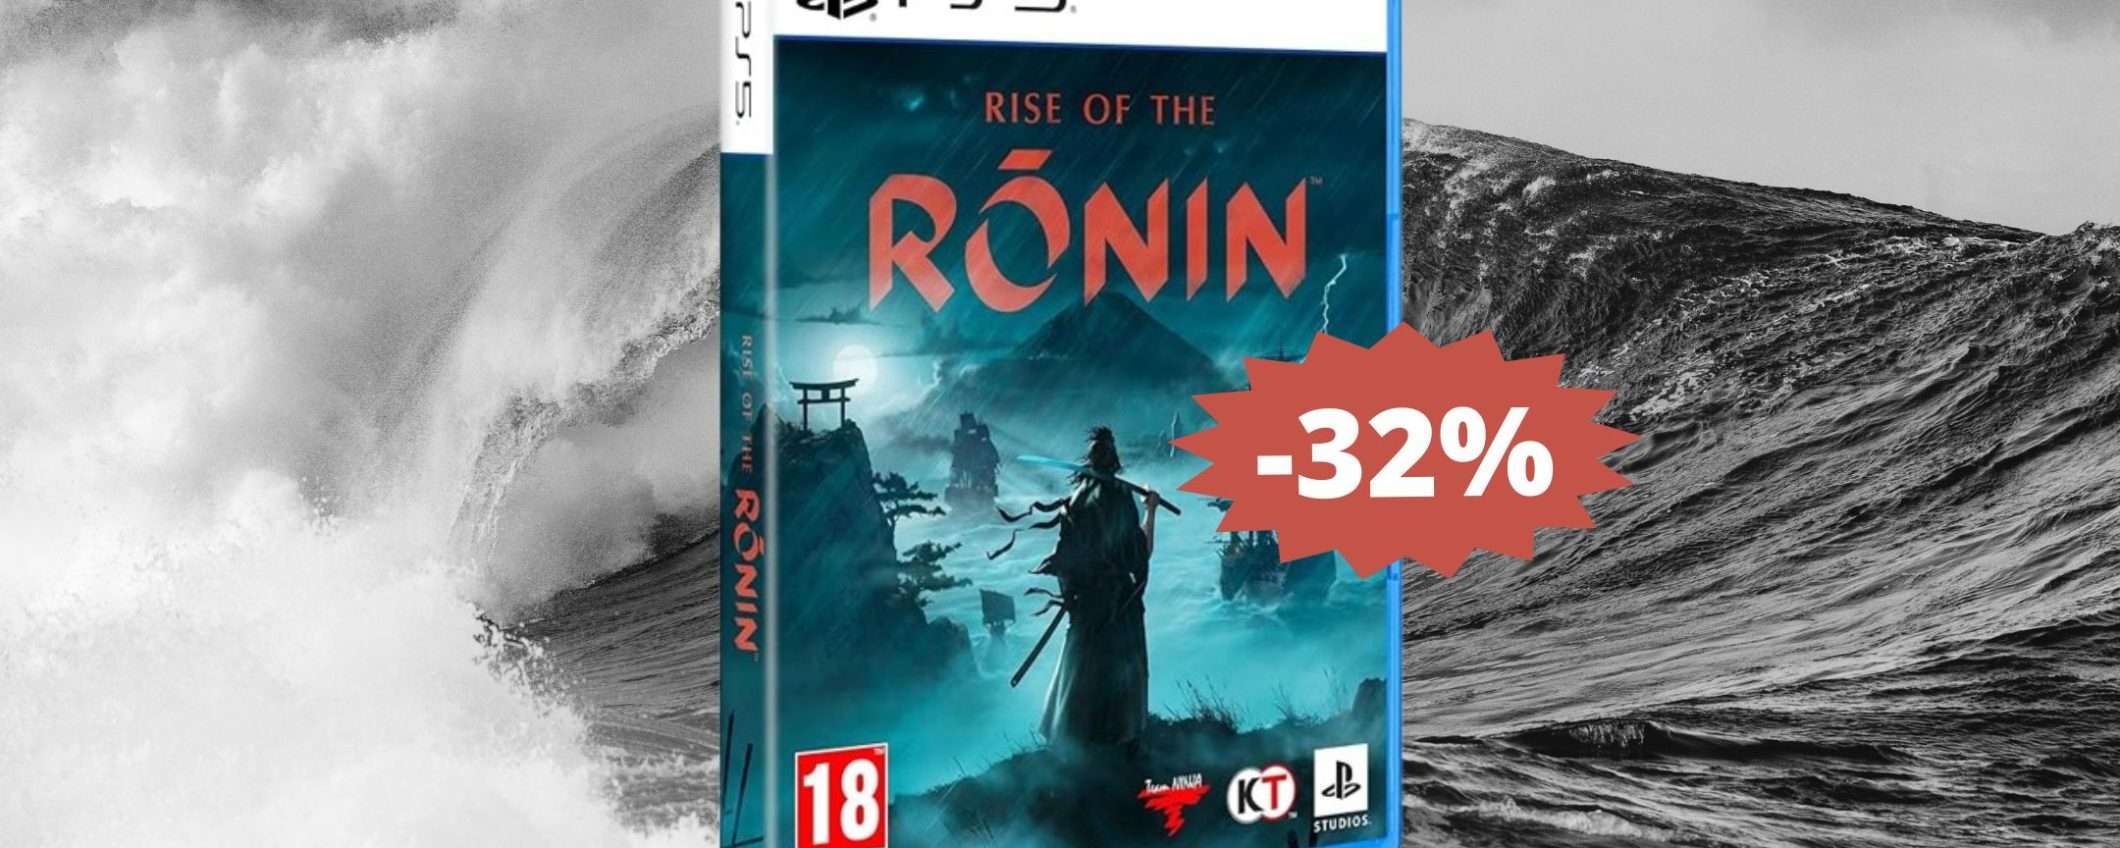 Rise of the Ronin per PS5: un'avventura da non perdere (-32%)